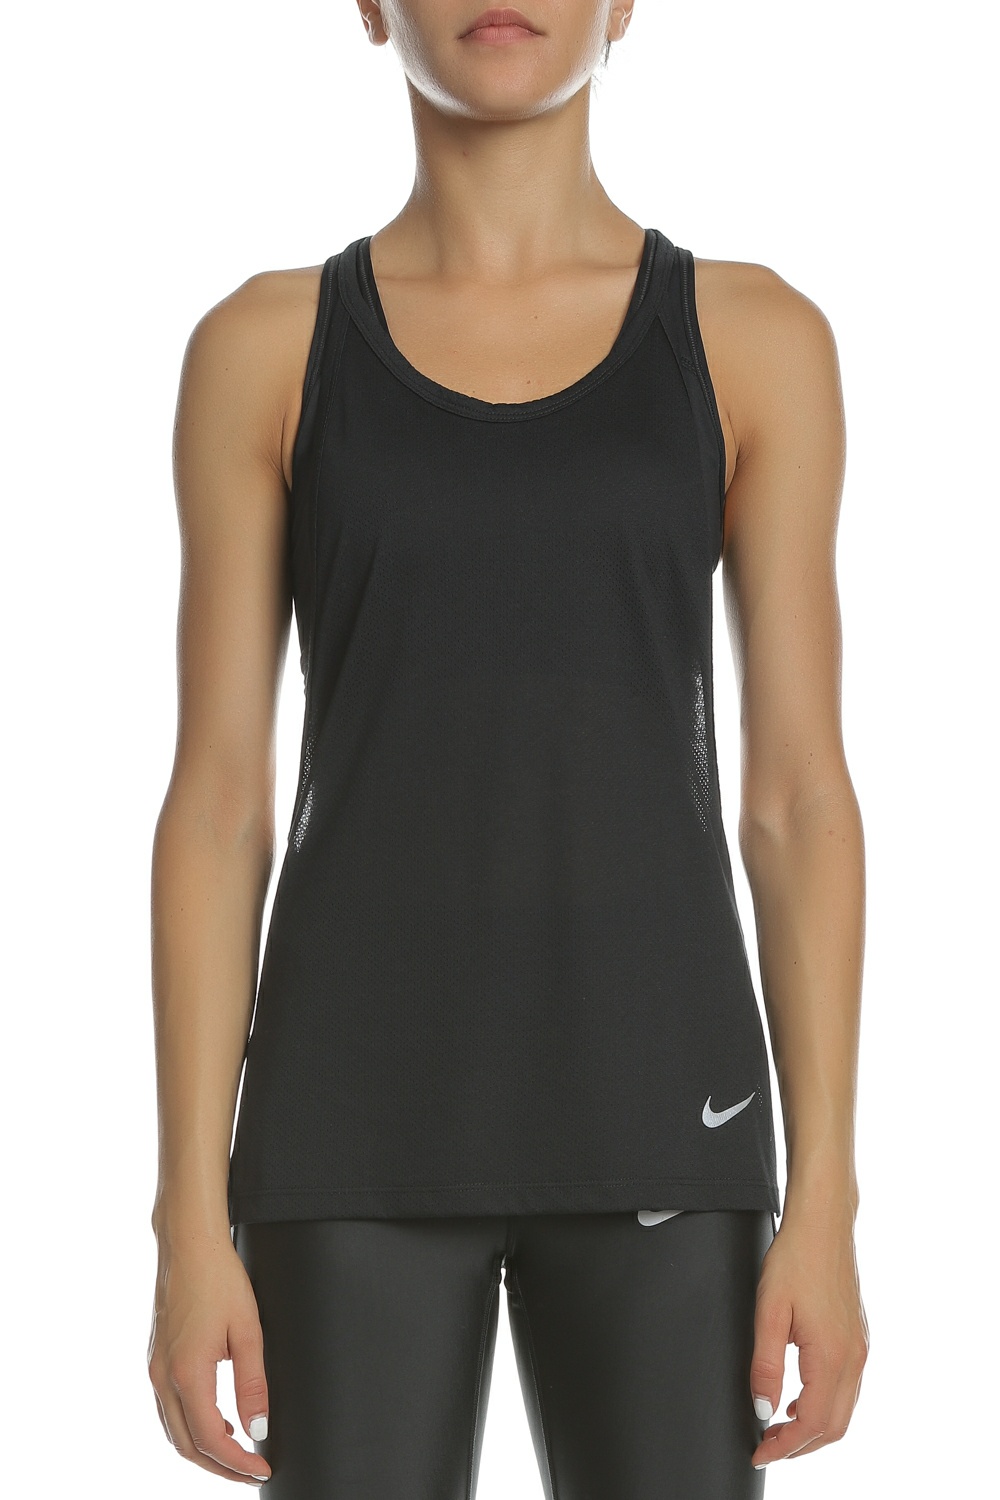 Γυναικεία/Ρούχα/Αθλητικά/T-shirt-Τοπ NIKE - Γυναικεία αμάνικη μπλούζα TAILWIND TOP SS COOL LX μαύρη